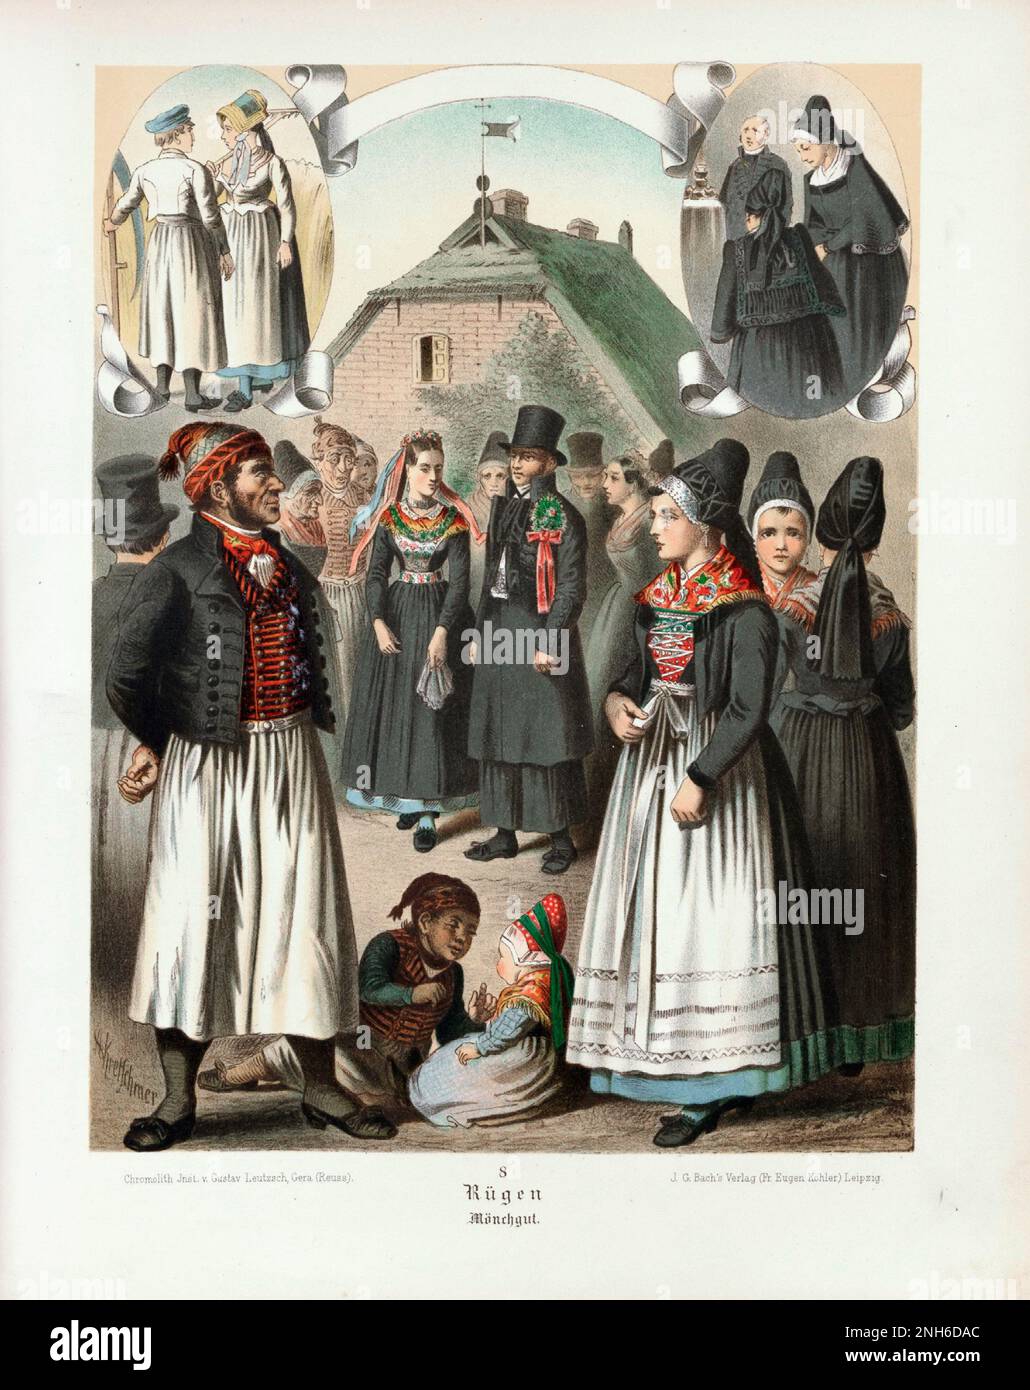 Disfraz folclórico alemán. Rügen. litografía del siglo 19th. Foto de stock